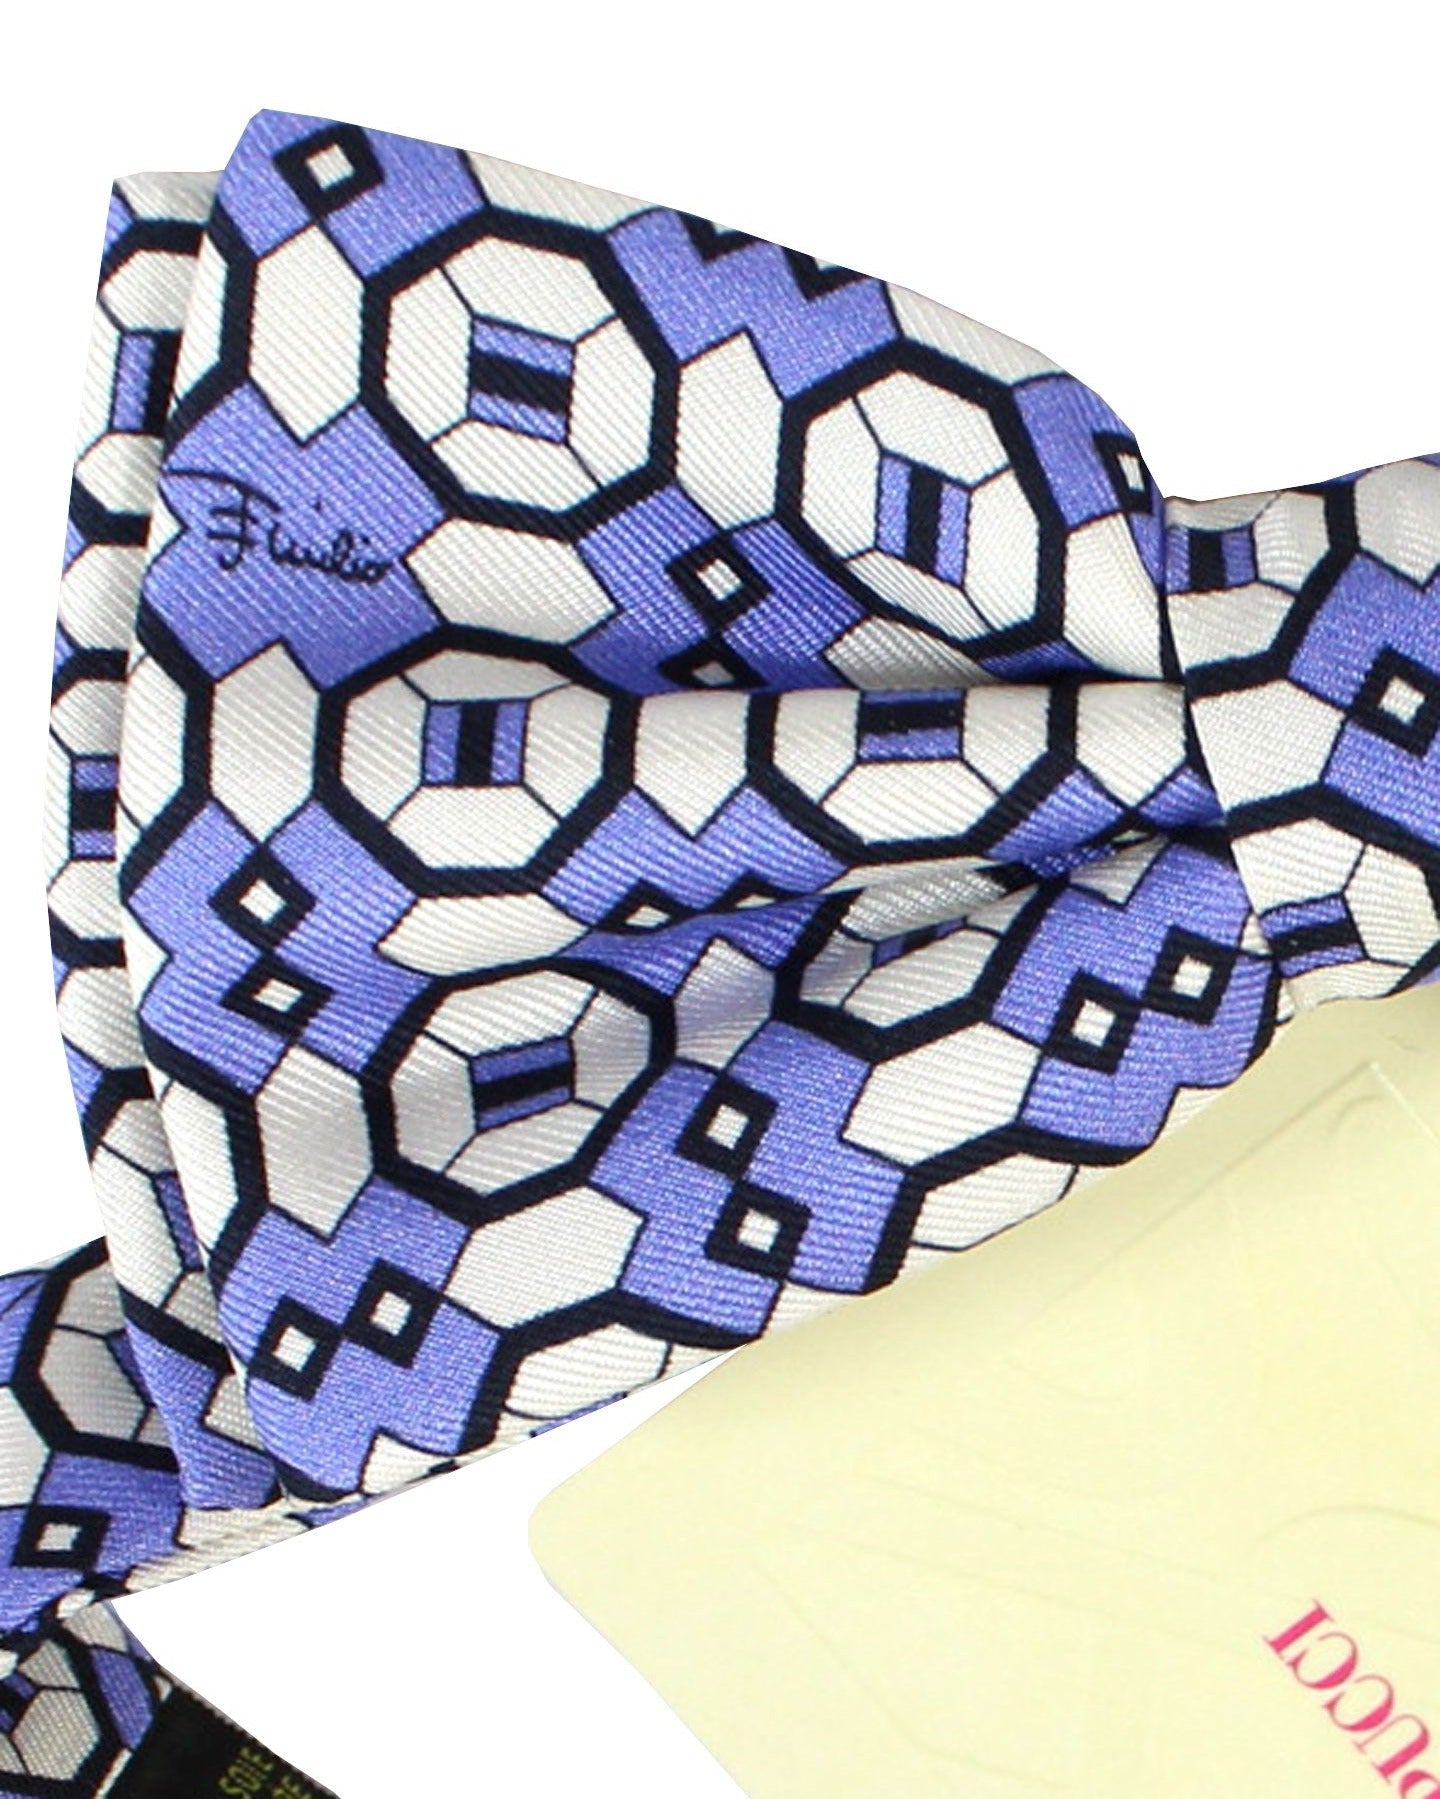 Emilio Pucci Silk Bow Tie Purple White Geometric Pre-Tied - Made In Italy